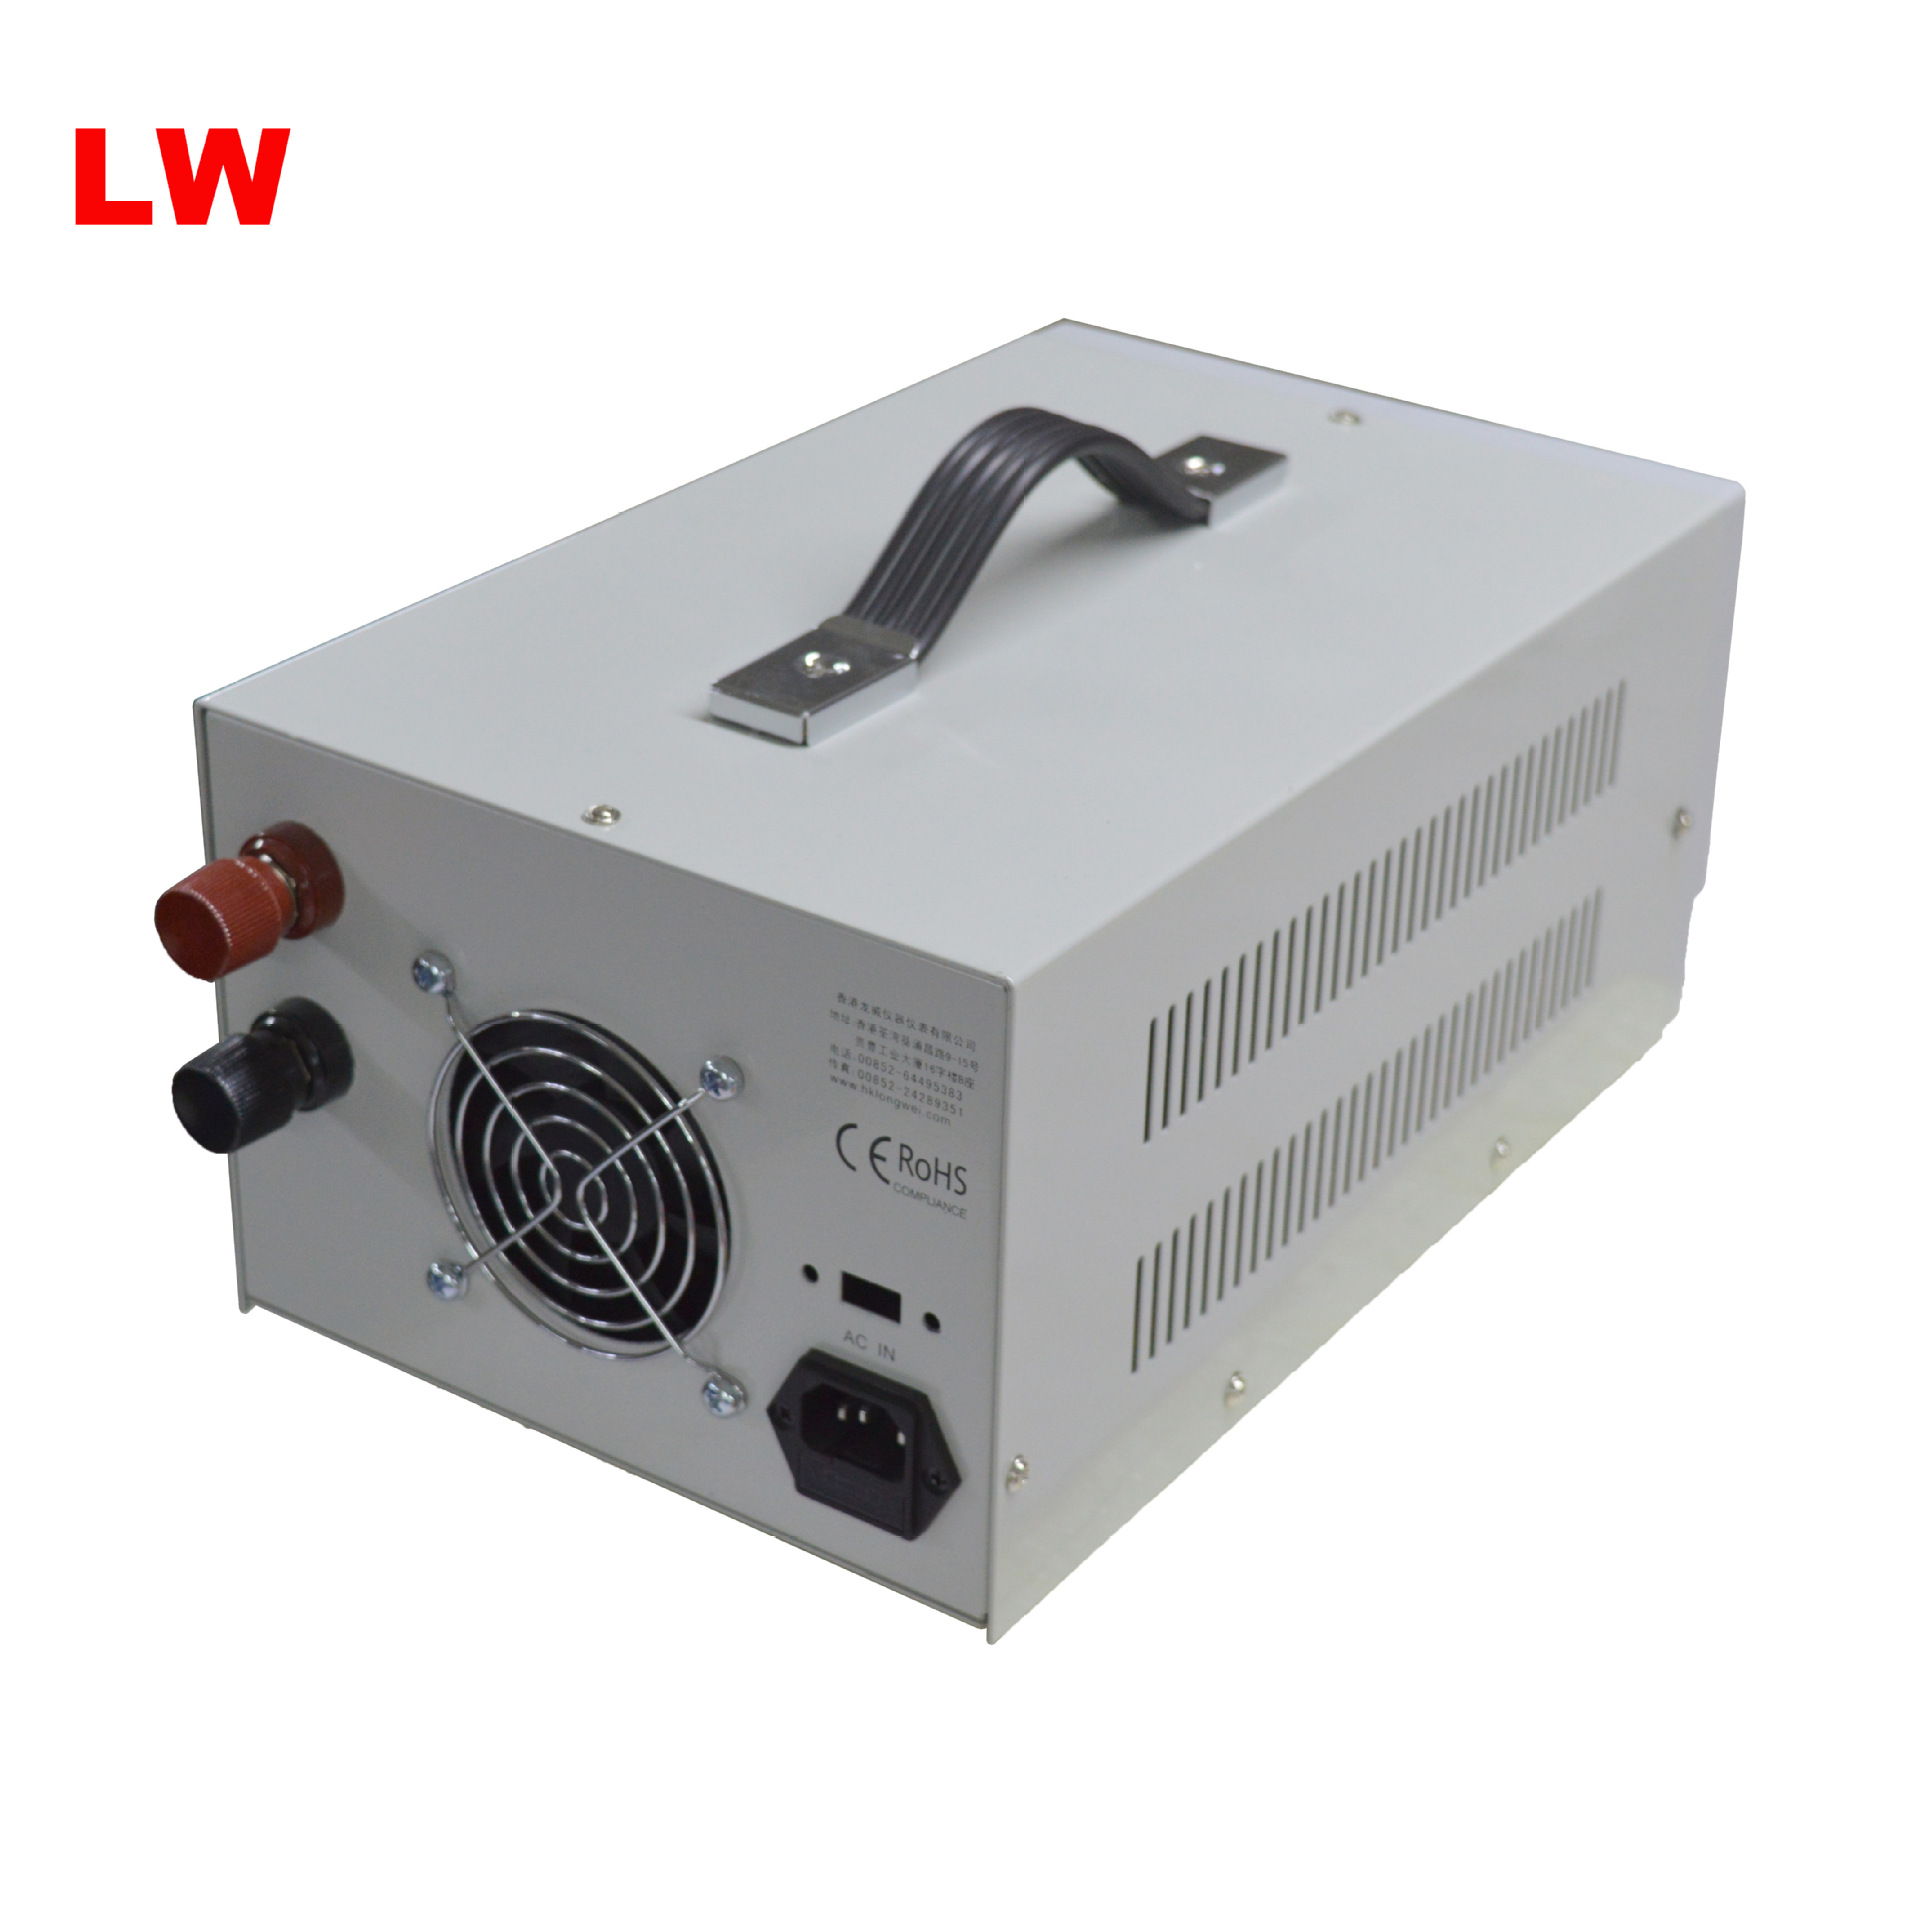 龙威LW-6010KD开关电源背面图